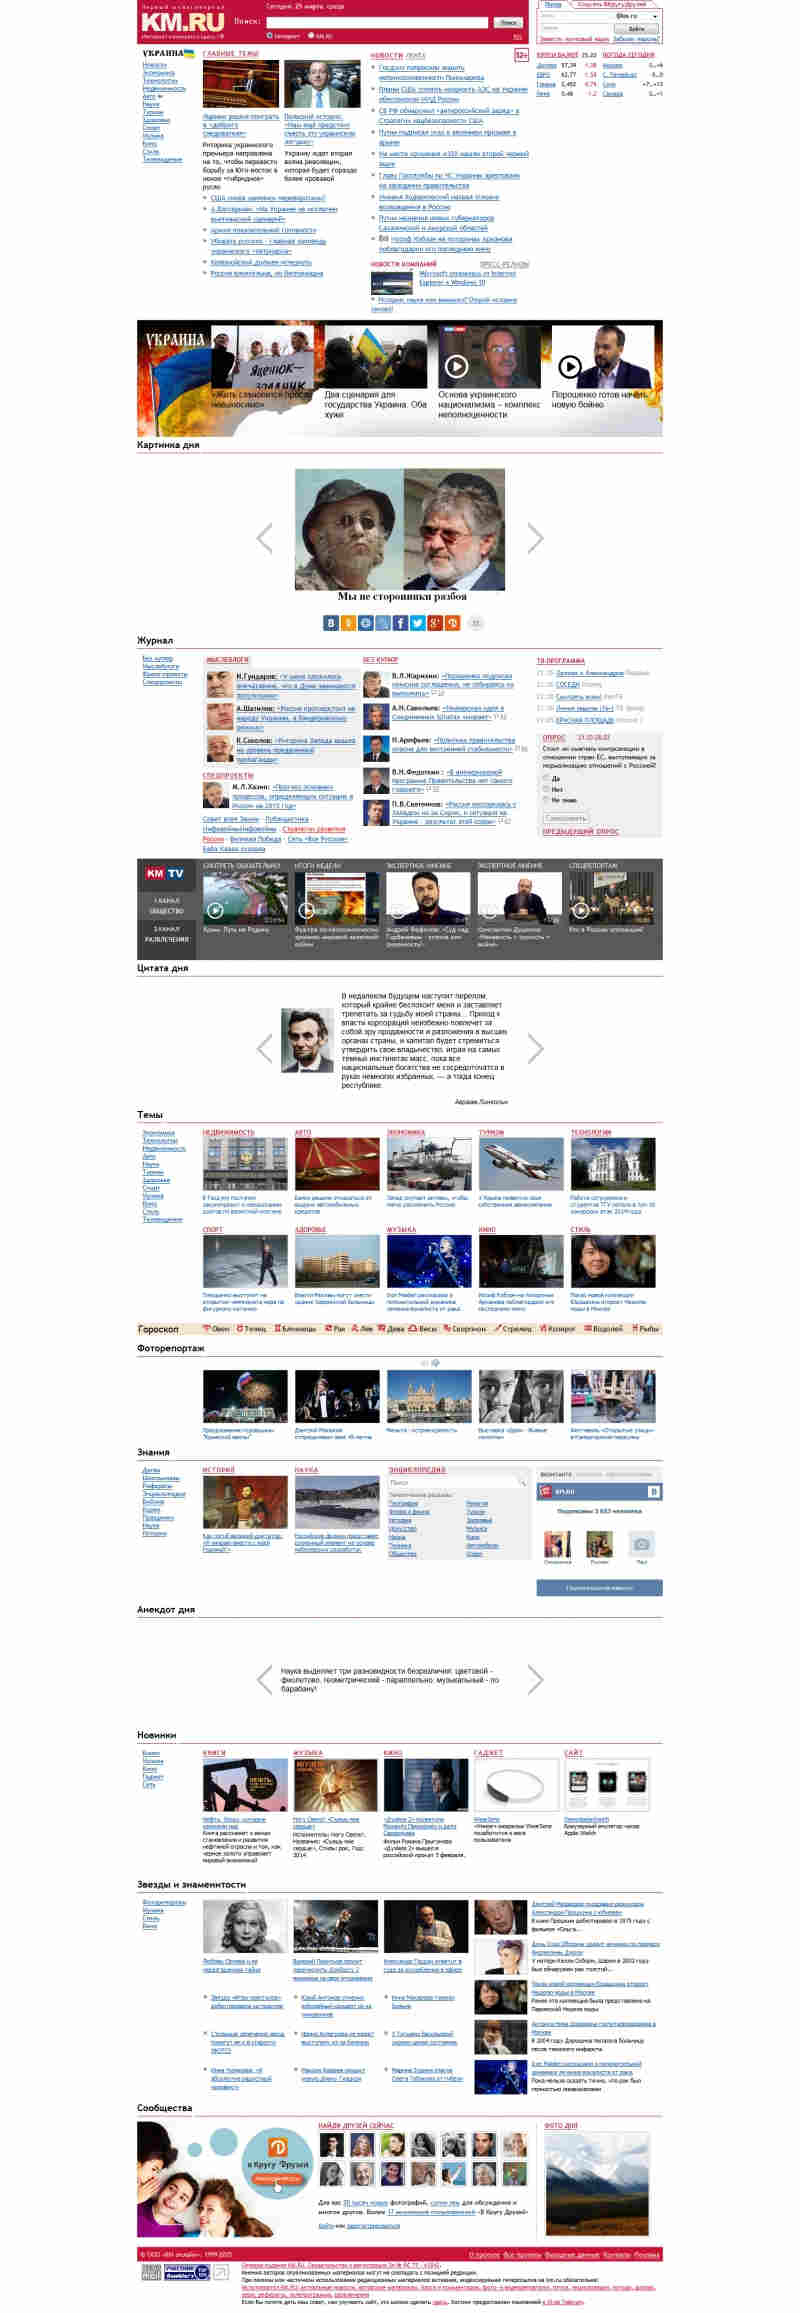 Скриншот сайта «km.ru» от 25.03.2015 года